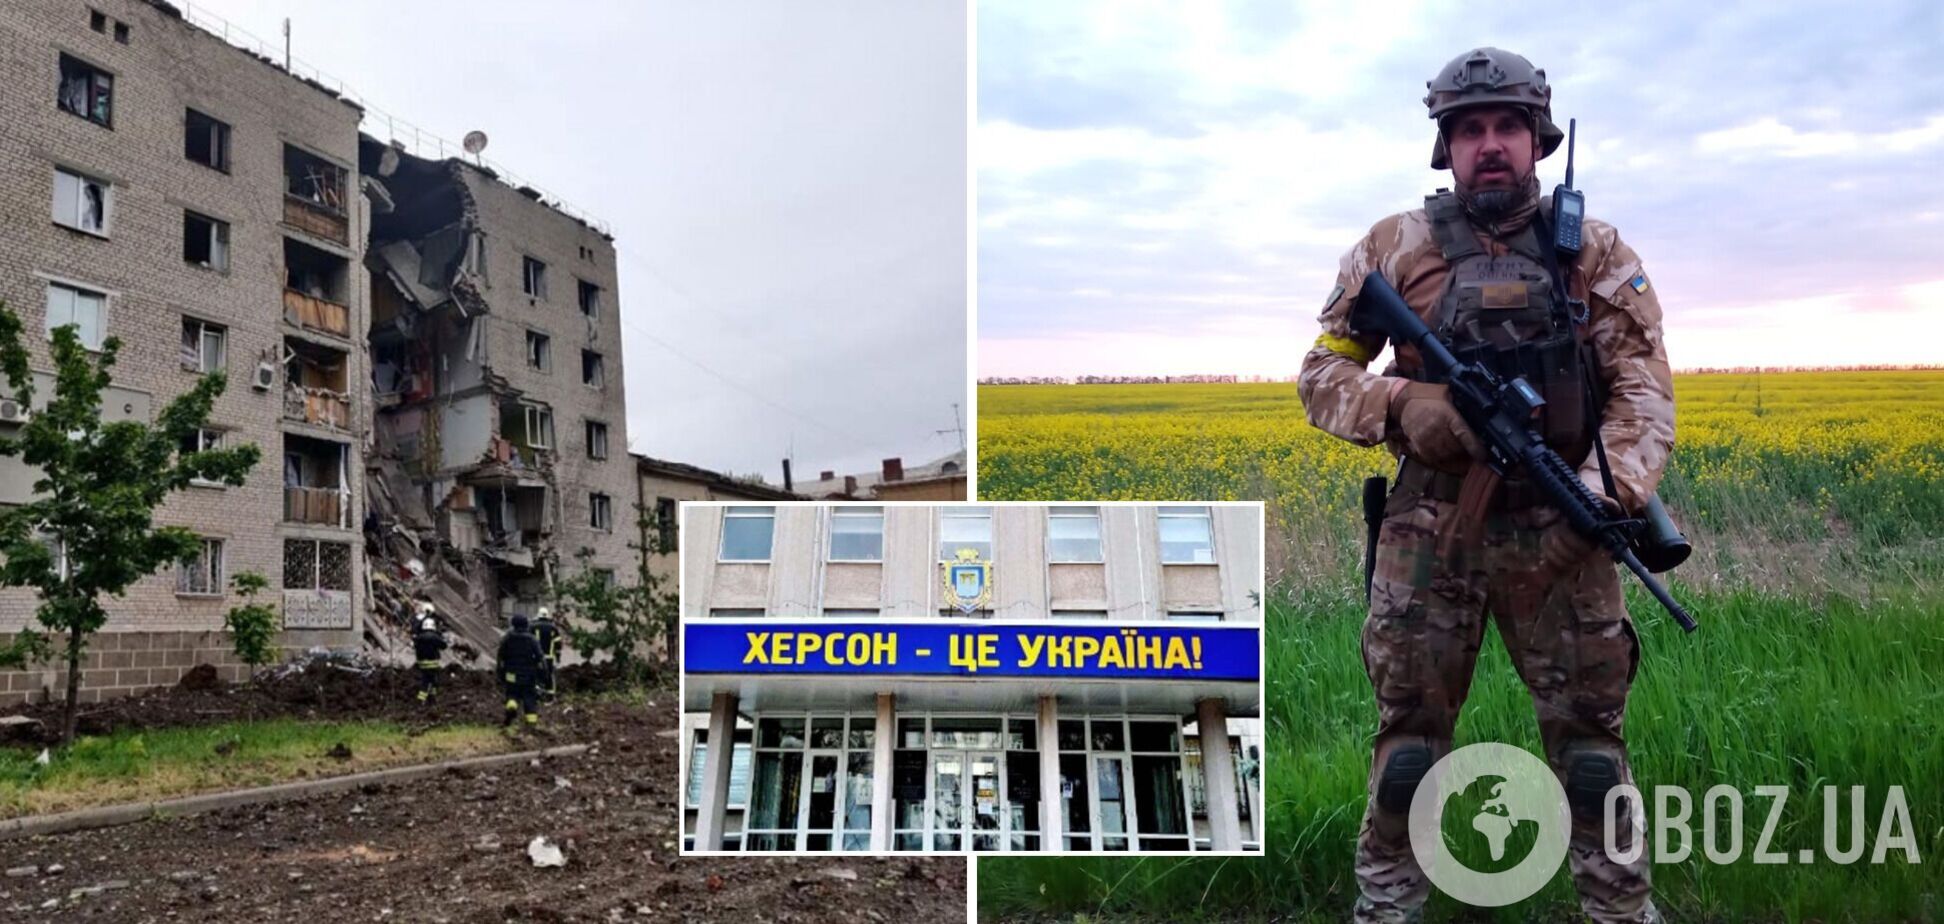 Режисер Сенцов, який захищає Україну: битва за Донбас добігає кінця. Сподіваюся, Херсон звільнимо у найближчі тижні